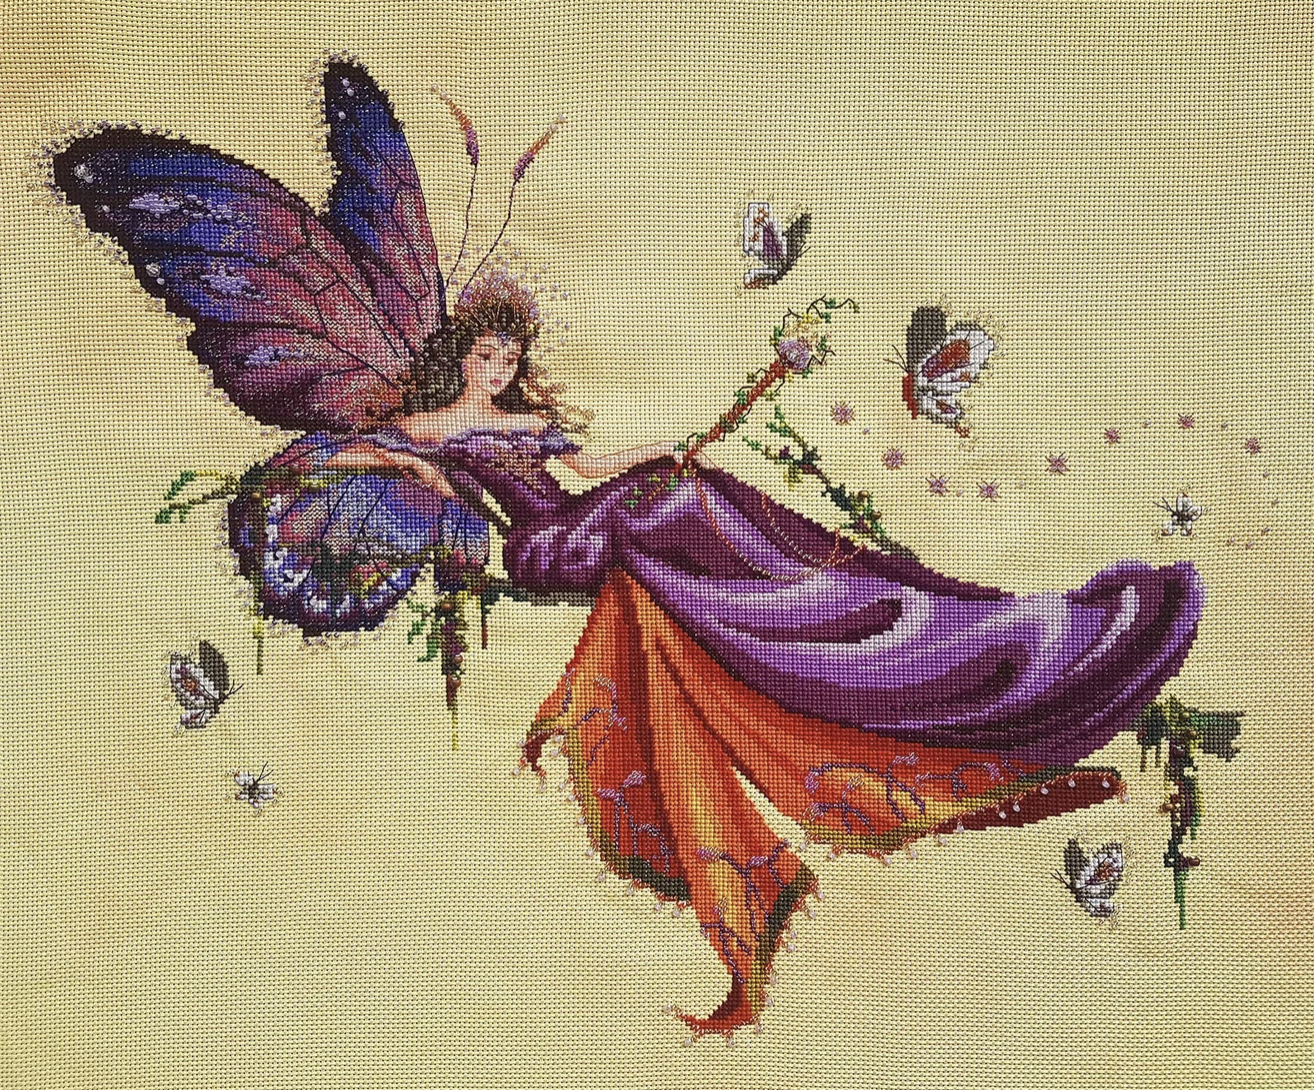 Reina Mariposa by Bella Filipina